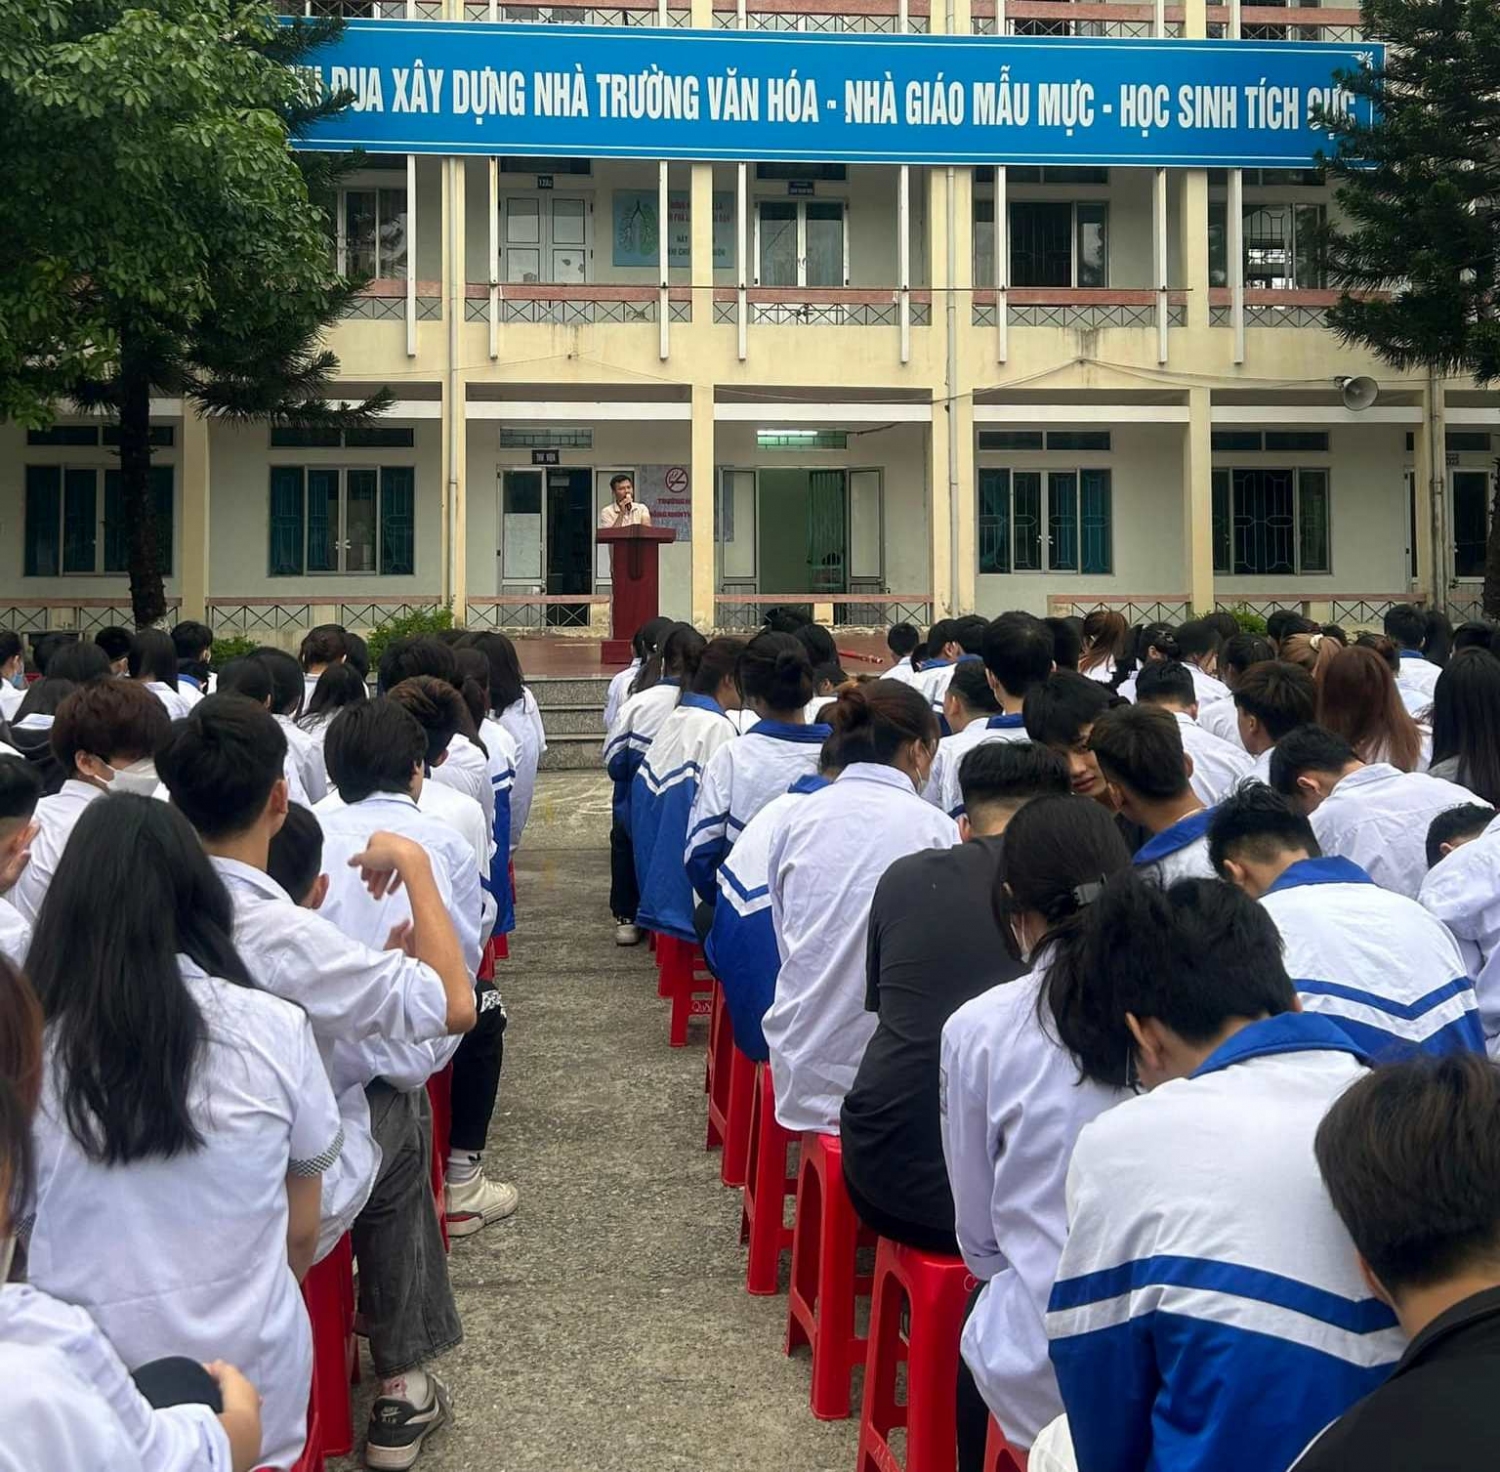 Tuyên truyền về 03 văn kiện pháp lý về biên giới đất liền Việt Nam – Trung quốc cho các em học sinh trong lễ chào cờ đầu tuần tại Đoàn trường THPT Bế Văn Đàn.